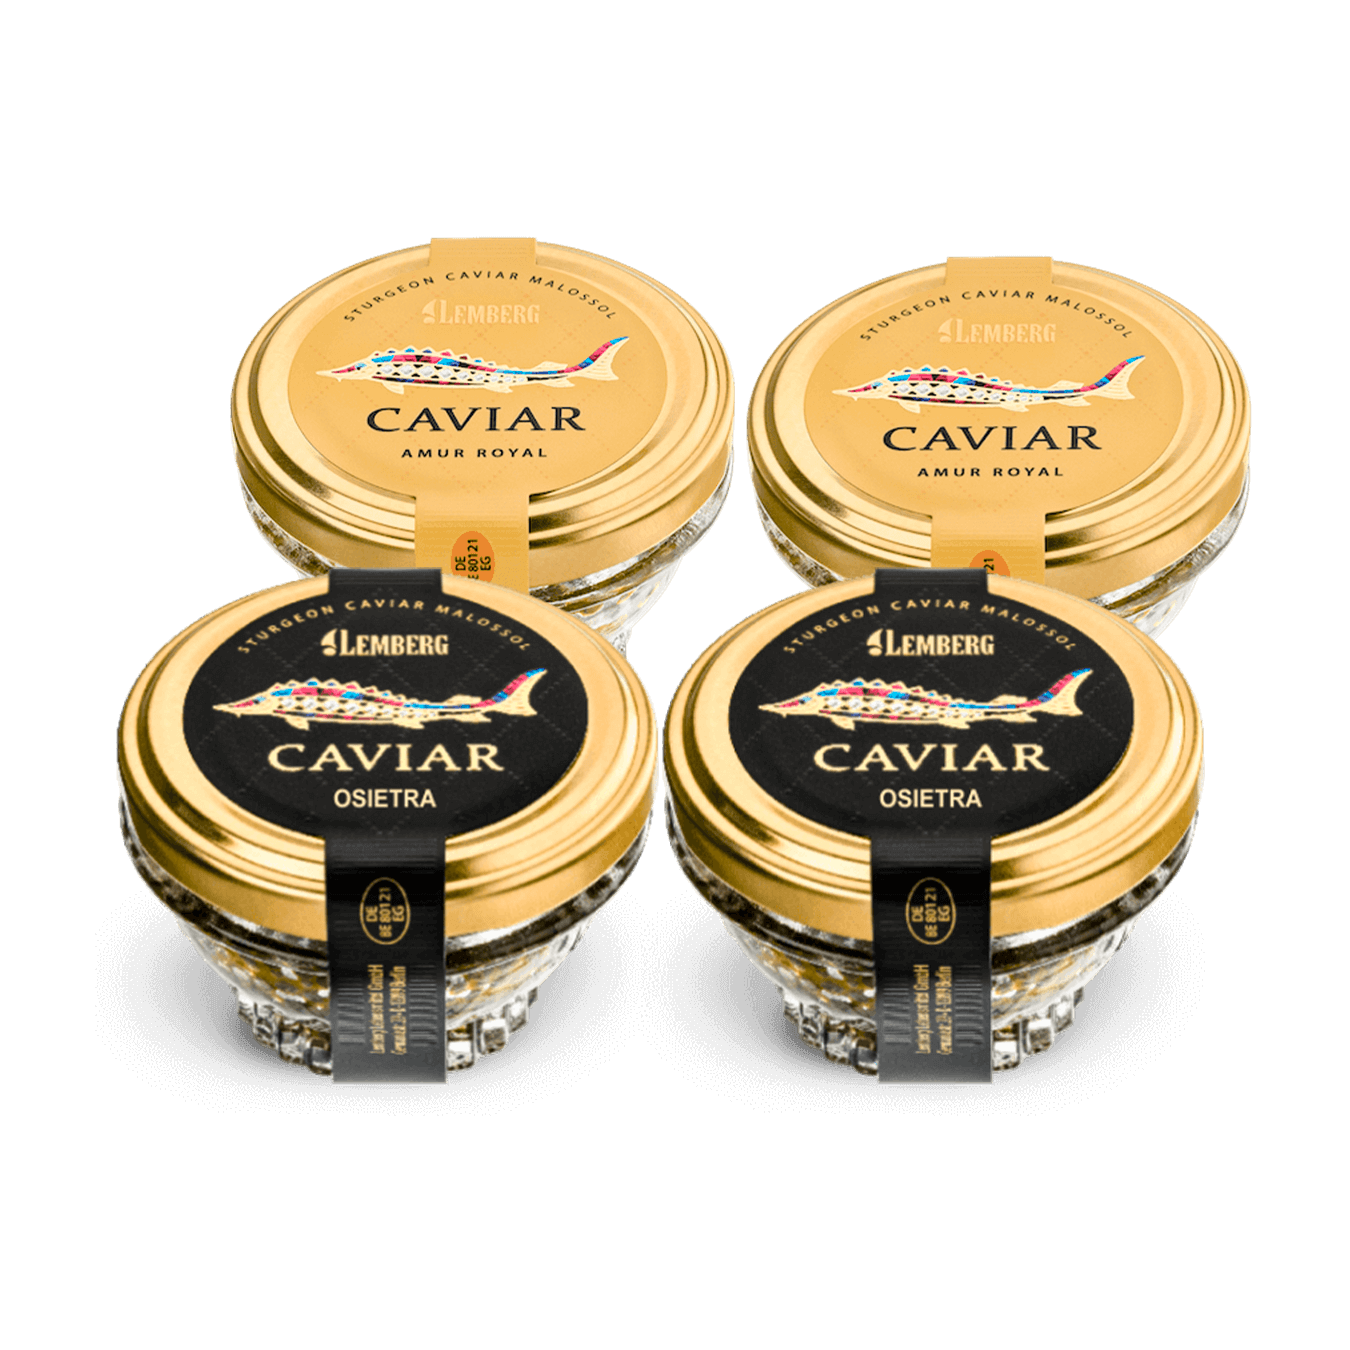 Spring caviar SET